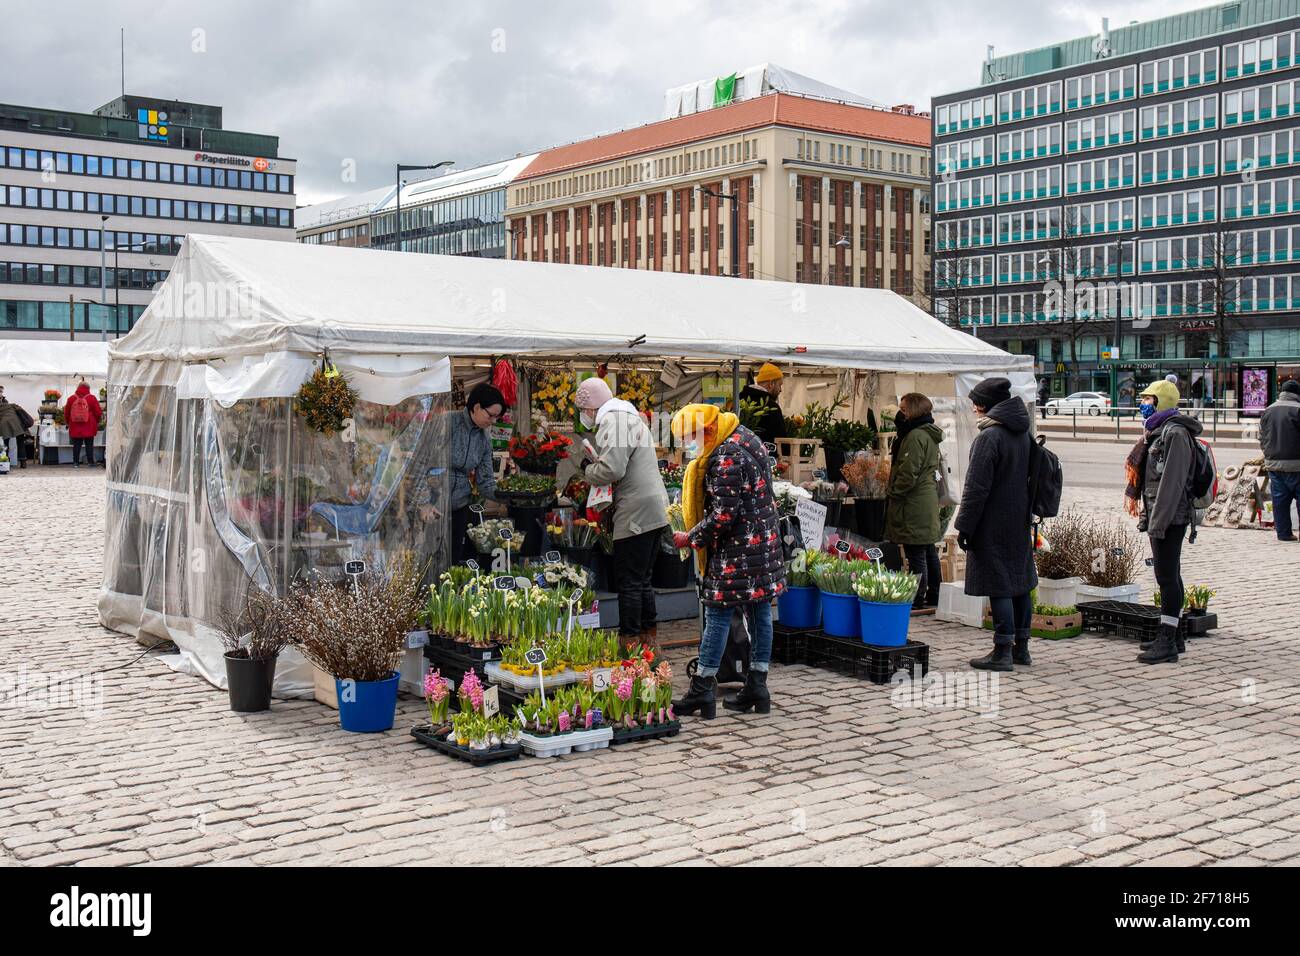 Les gens qui achètent des fleurs coupées, des bouquets et des fleurs de balcon à la stalle de fleuriste couverte de marquise sur la place du marché Hakaniemi à Helsinki, en Finlande Banque D'Images